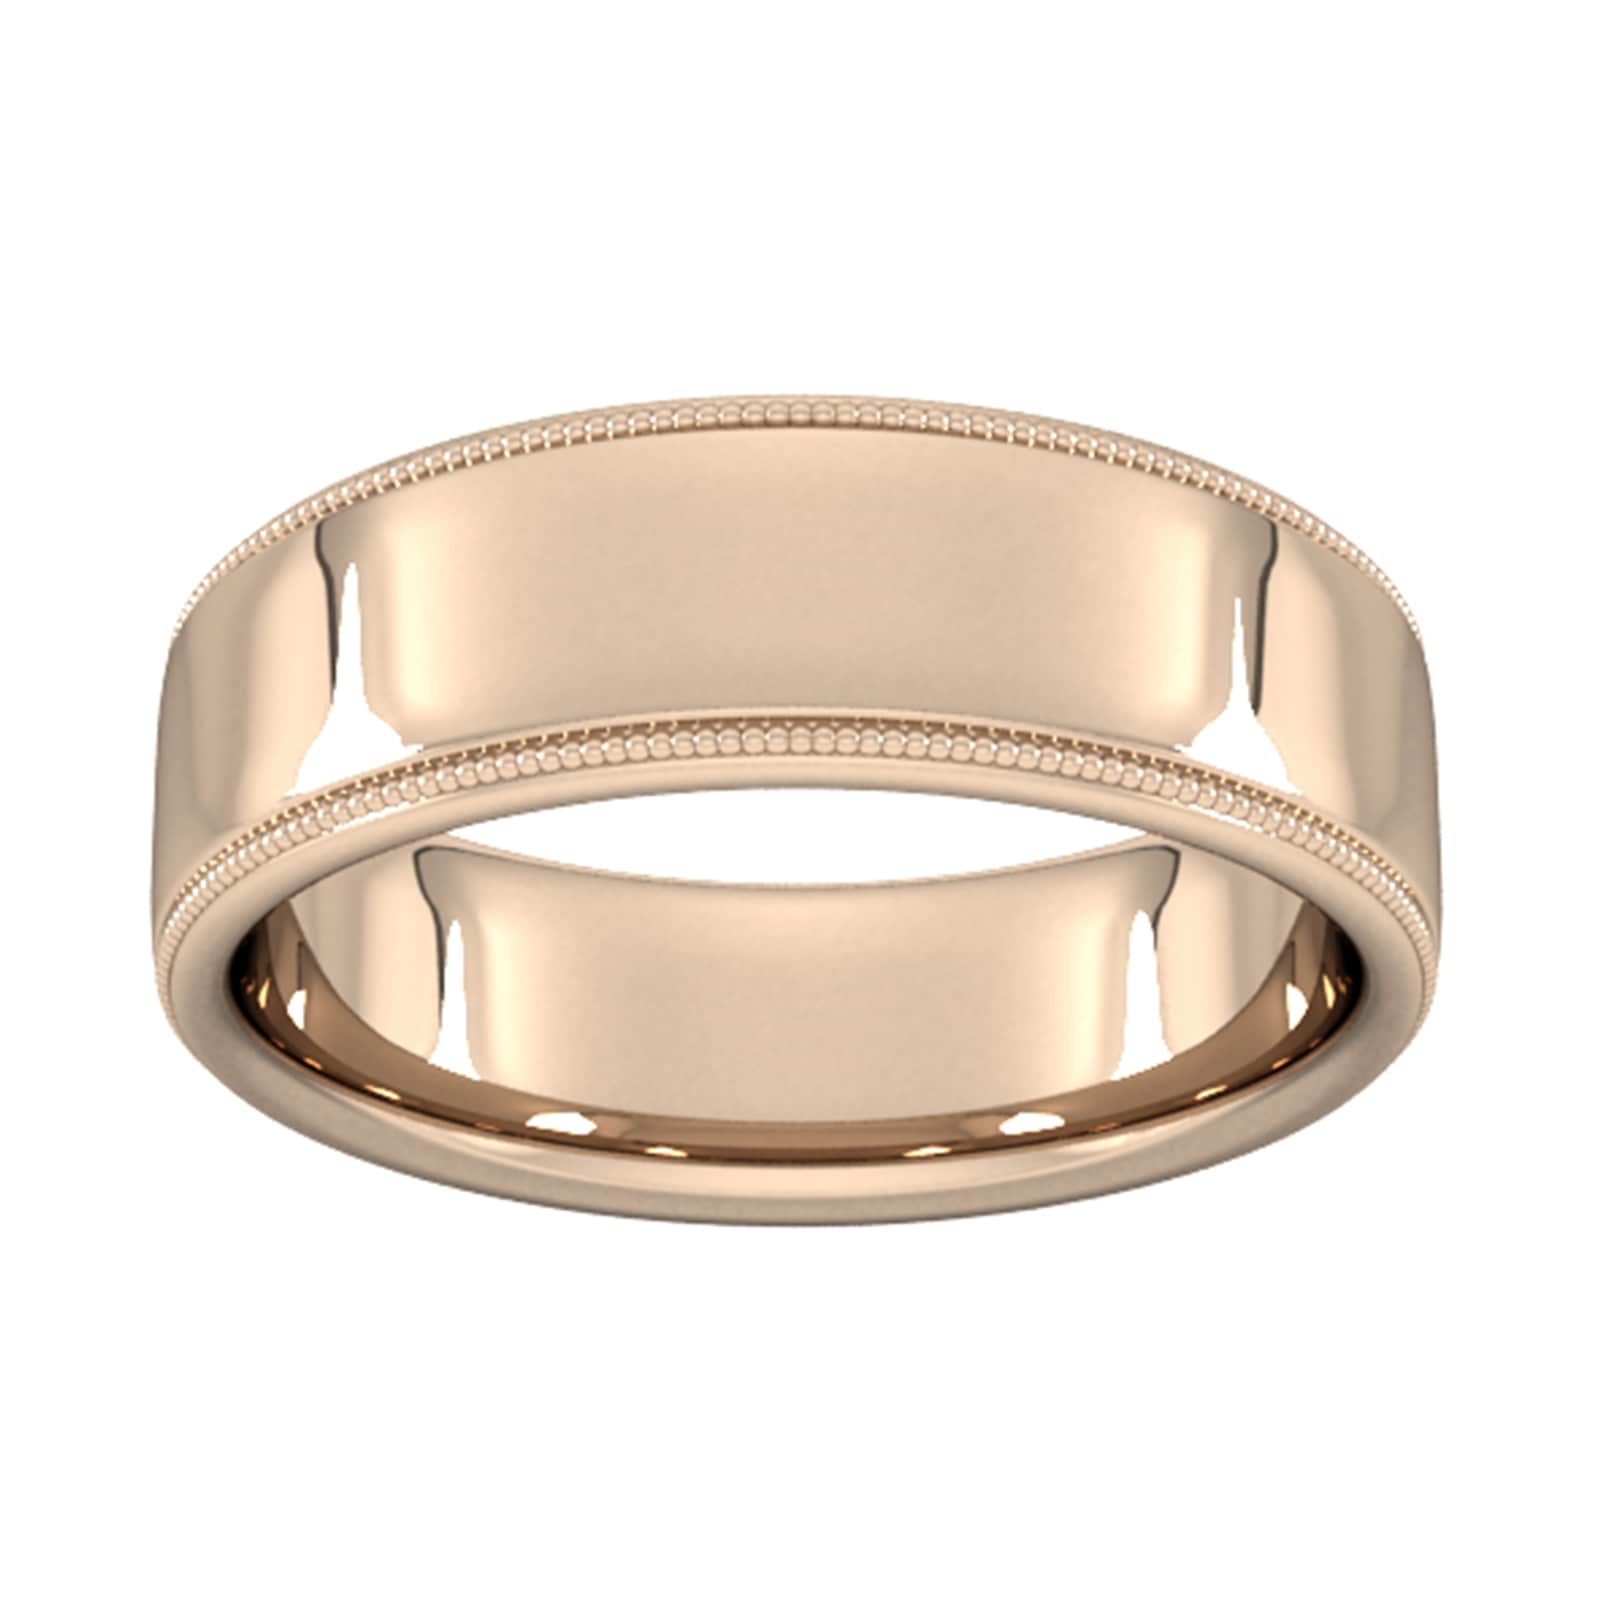 7mm Slight Court Standard Milgrain Edge Wedding Ring In 9 Carat Rose Gold - Ring Size R